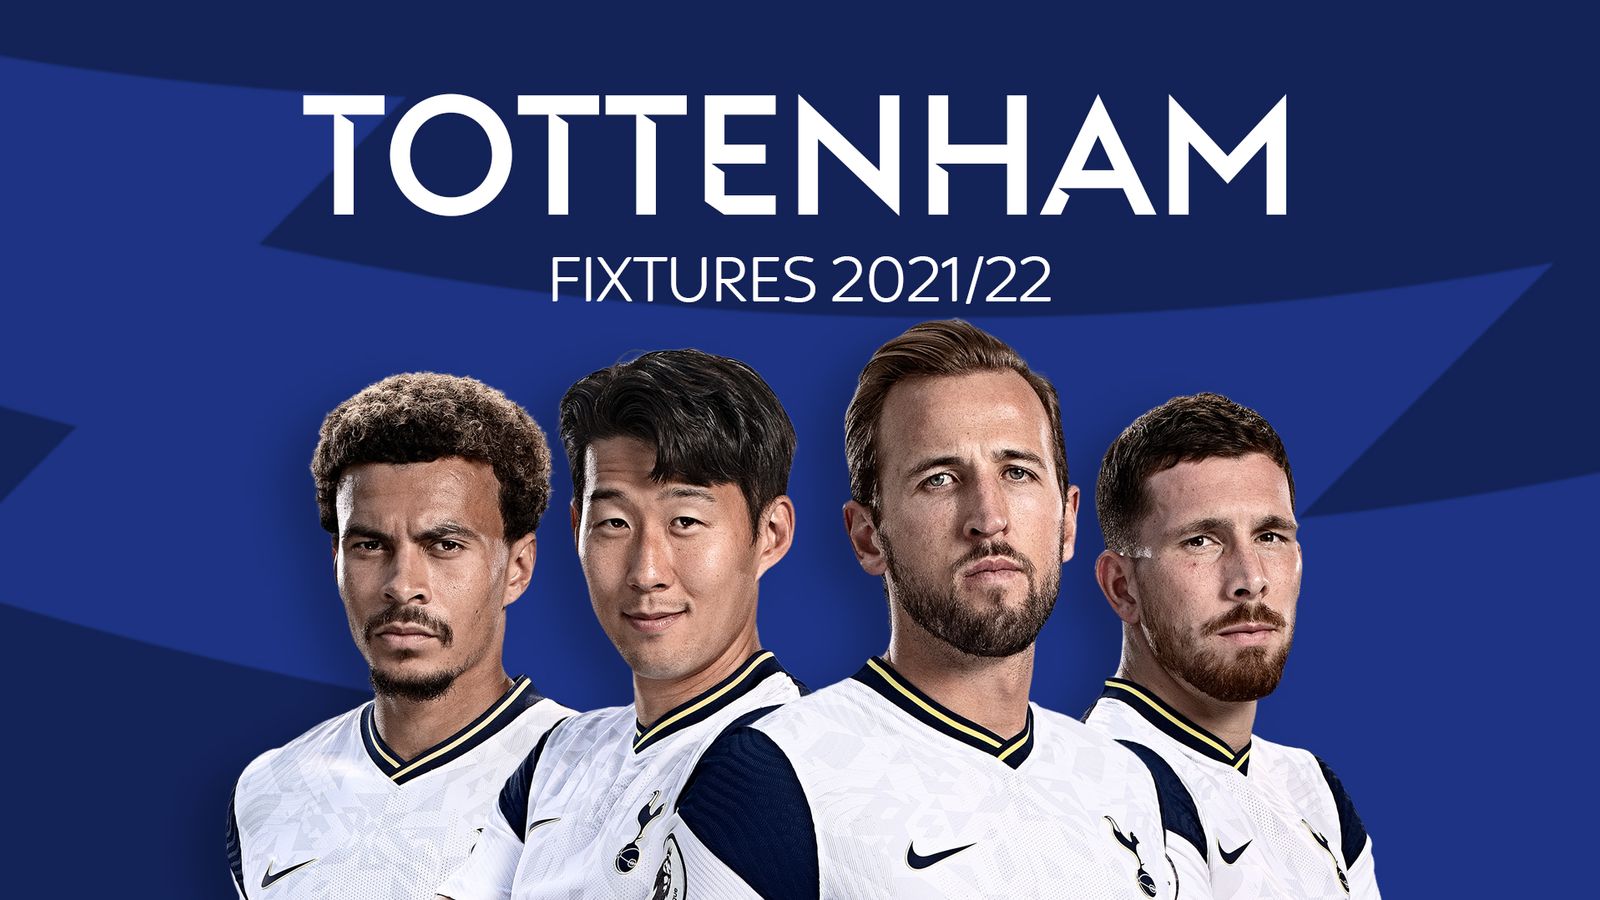 Tottenham fixtures & results: 2021/22 season